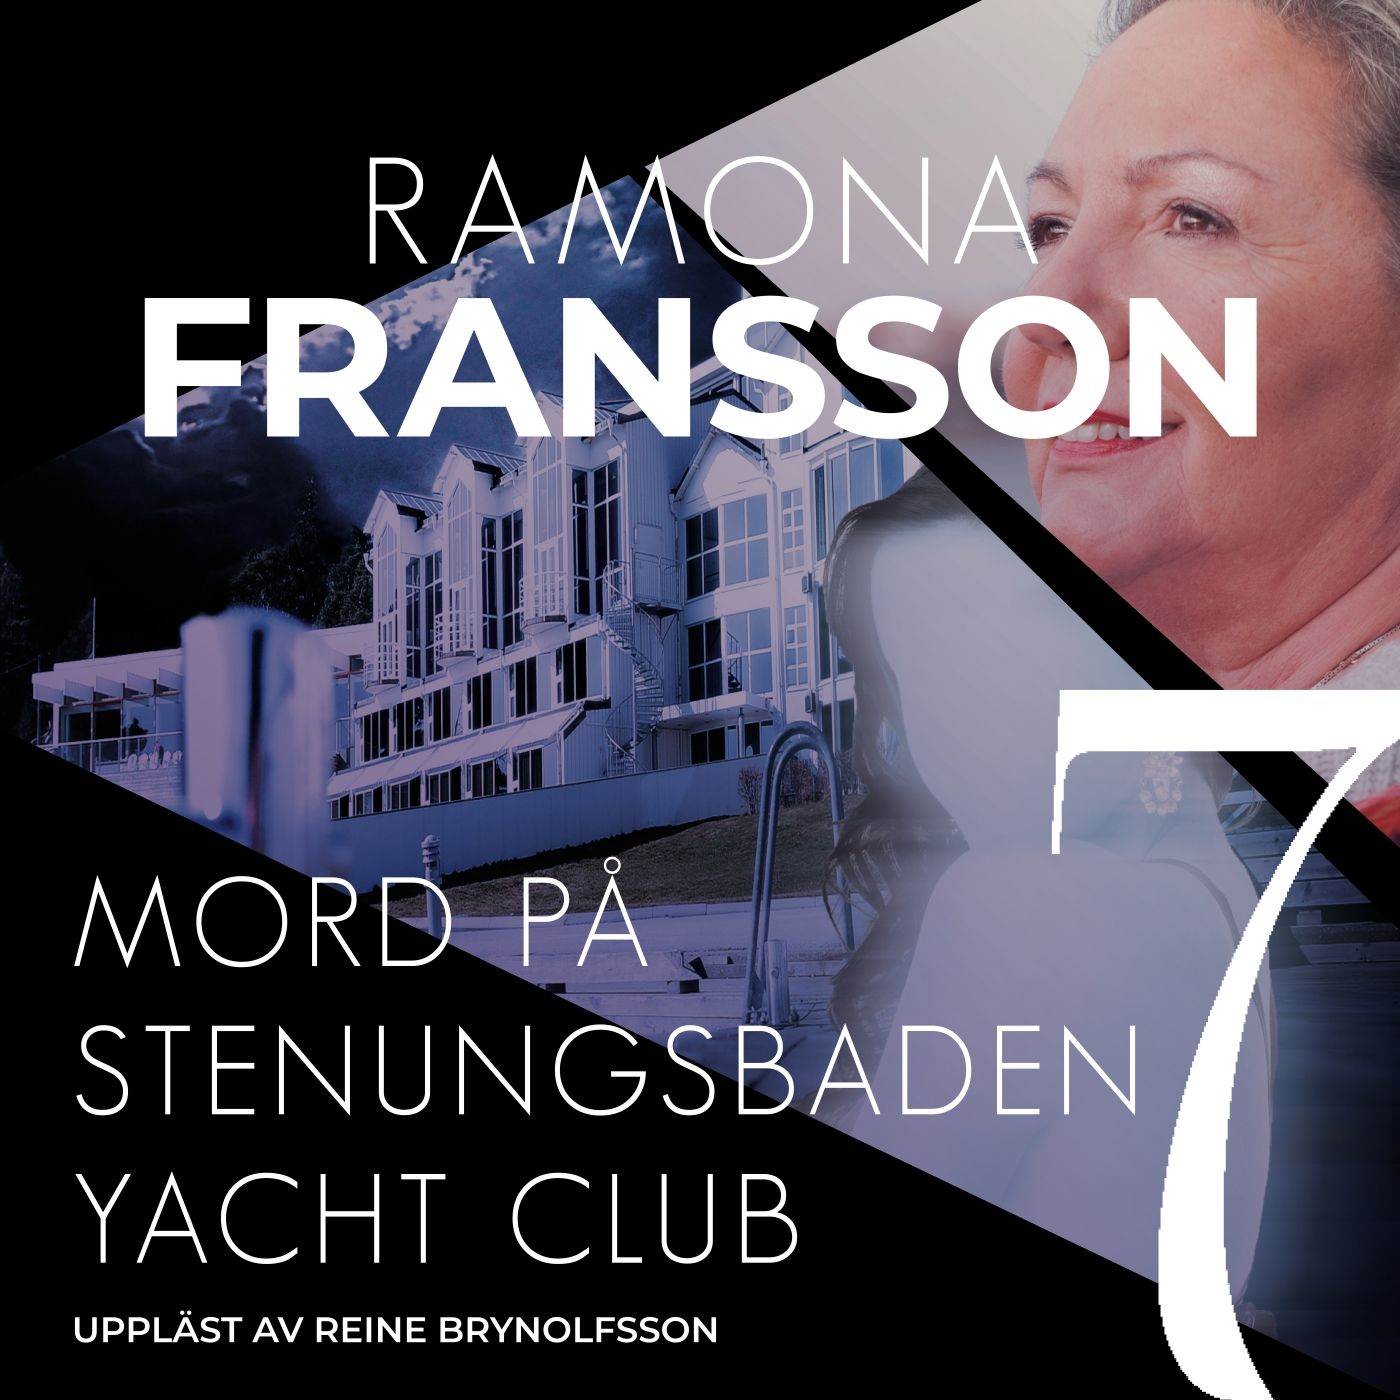 Mord på Stenungsbaden Yacht Club, ljudbok av Ramona Fransson